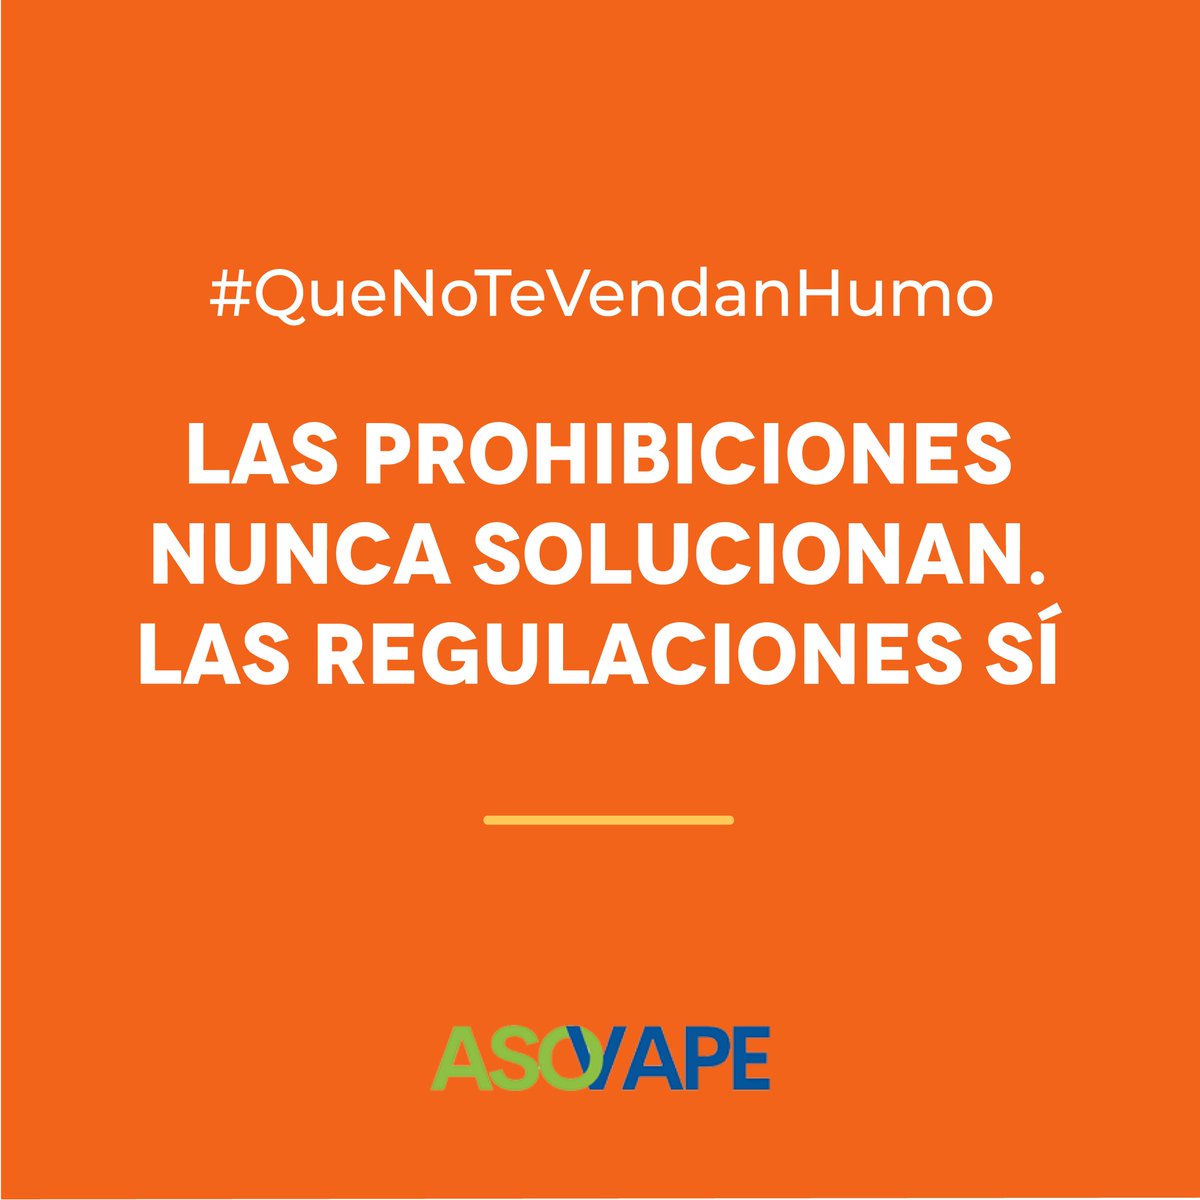 #QueNoTeVendanHumo - Todos los mercados se regulan para asegurar el bienestar del consumidor. ¿Por qué no se avanza con la regulación del vapeo que podría beneficiar a tantos fumadores uruguayos?